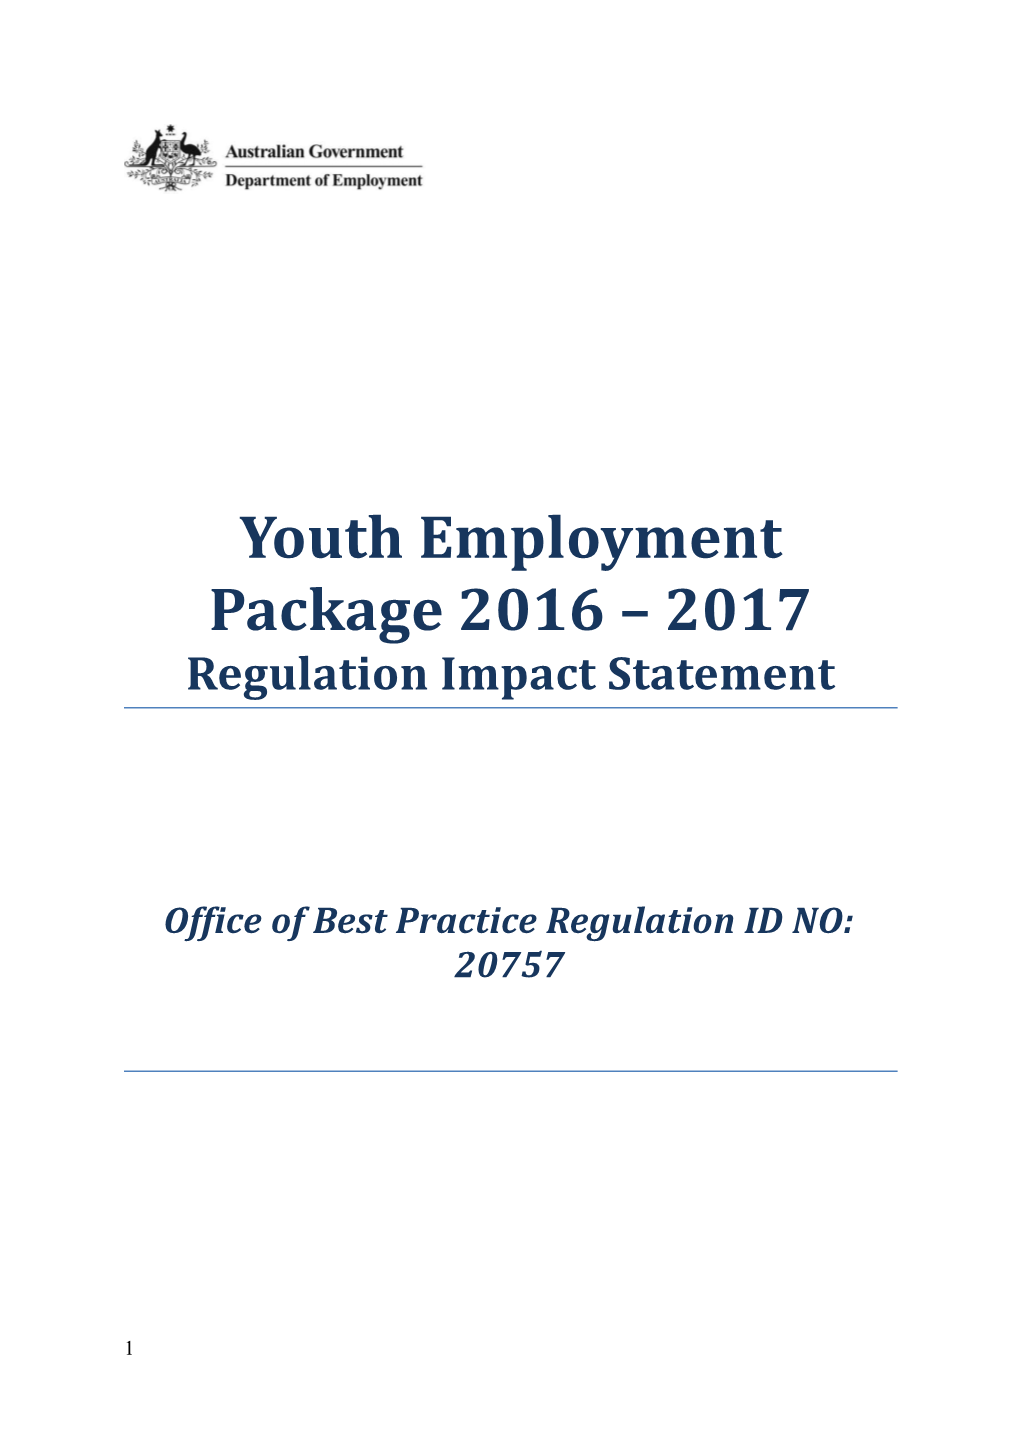 Office of Best Practice Regulation ID NO: 20757